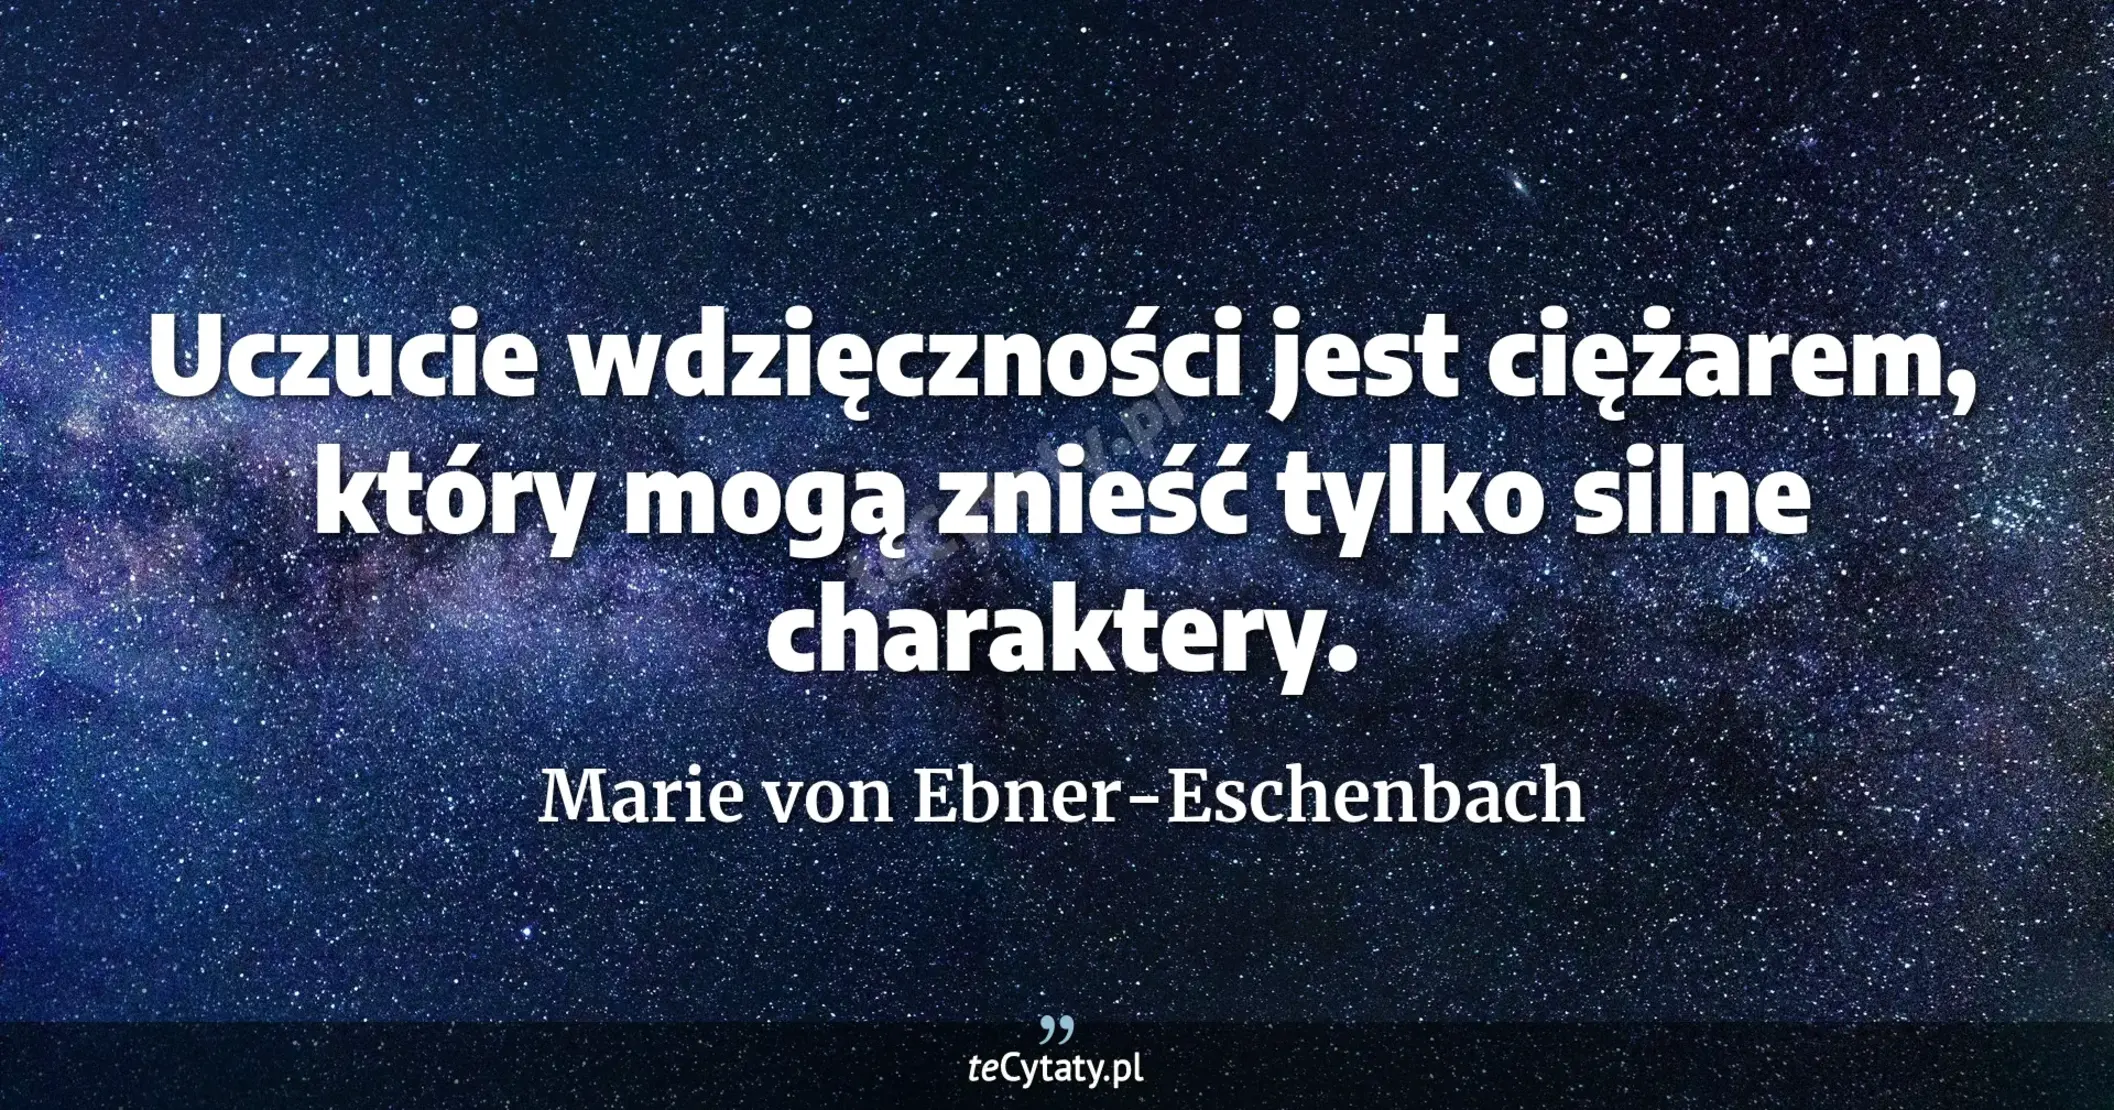 Uczucie wdzięczności jest ciężarem, który mogą znieść tylko silne charaktery. - Marie von Ebner-Eschenbach